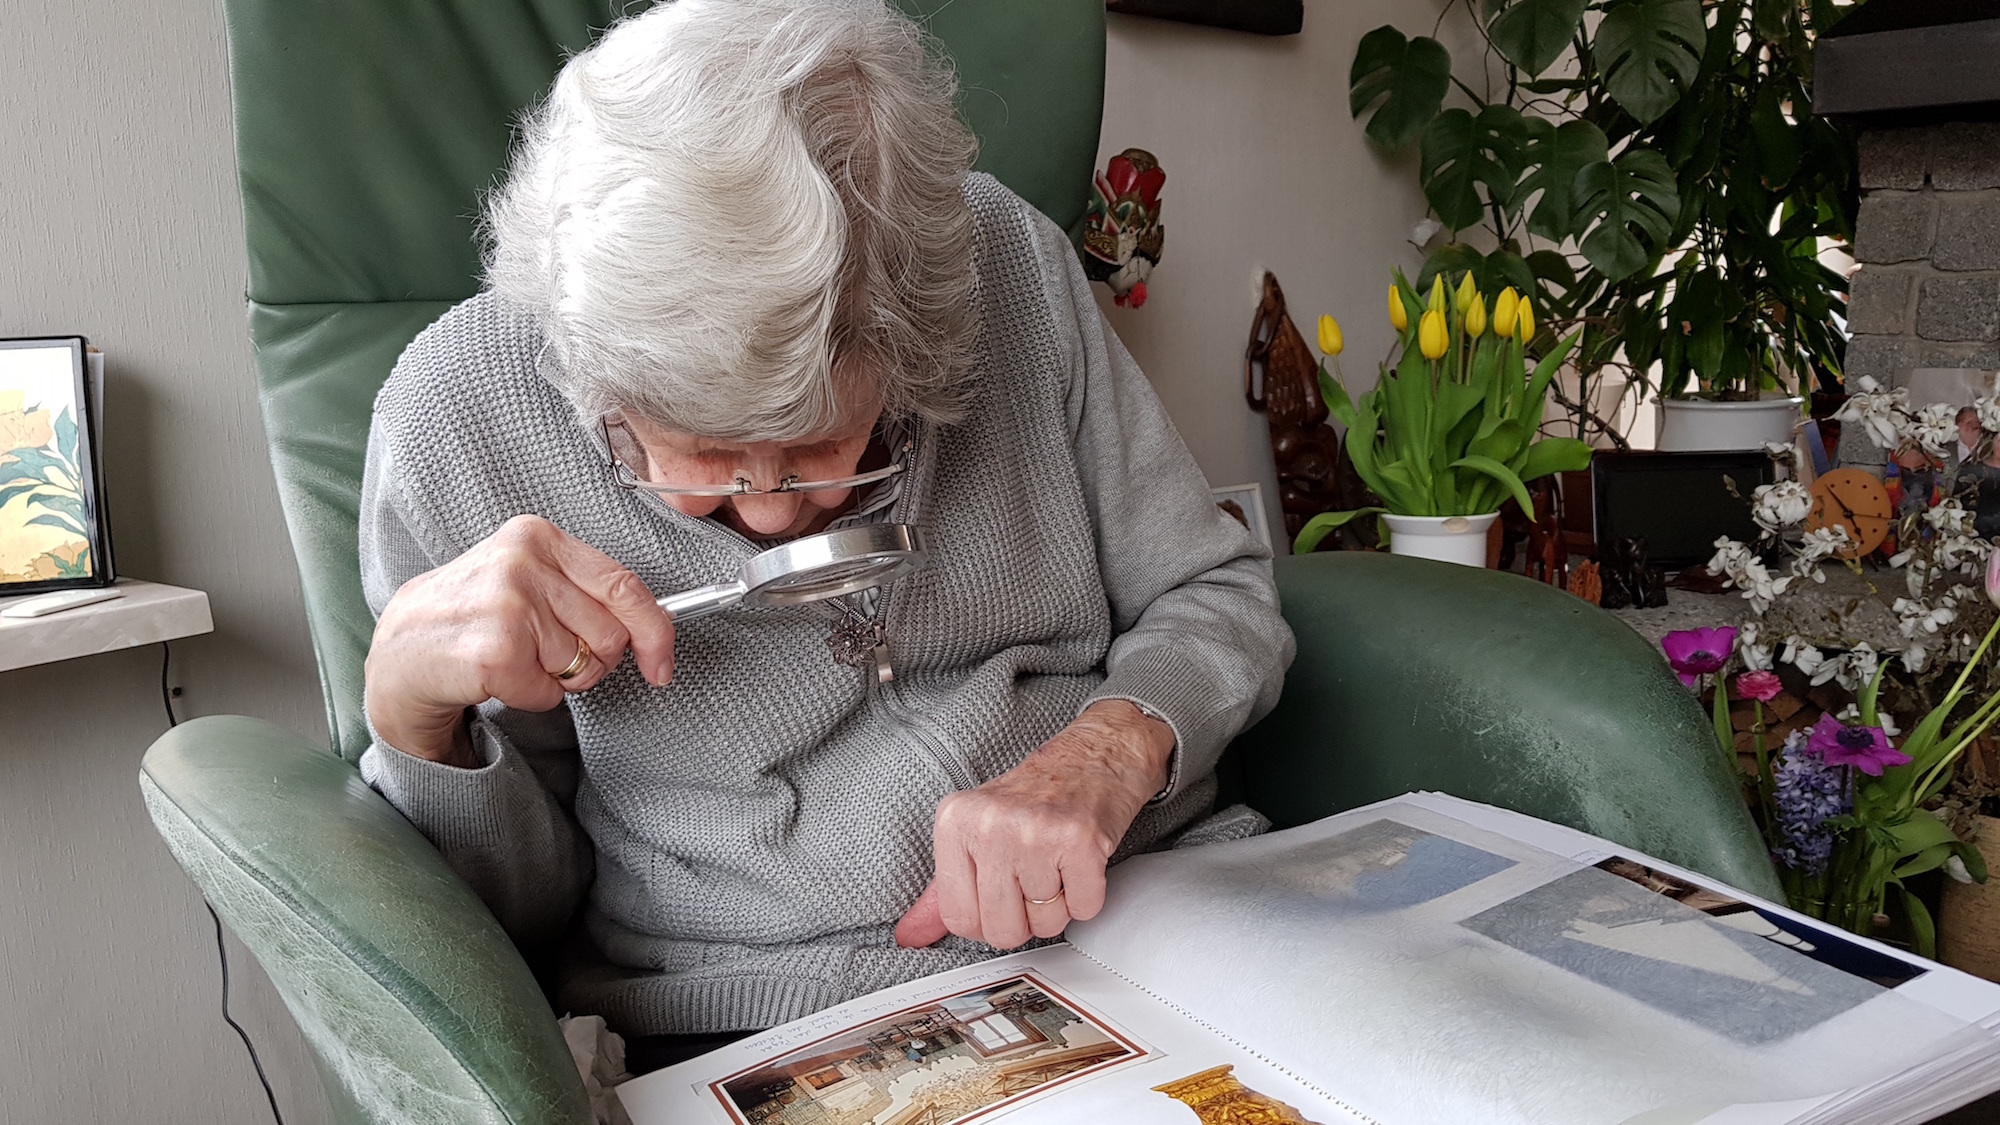 Alten Menschen auch im hohen Alter Lebensqualität zu schenken, ist ein Anliegen der Dienste und Einrichtungen. (c) www.pixabay.com